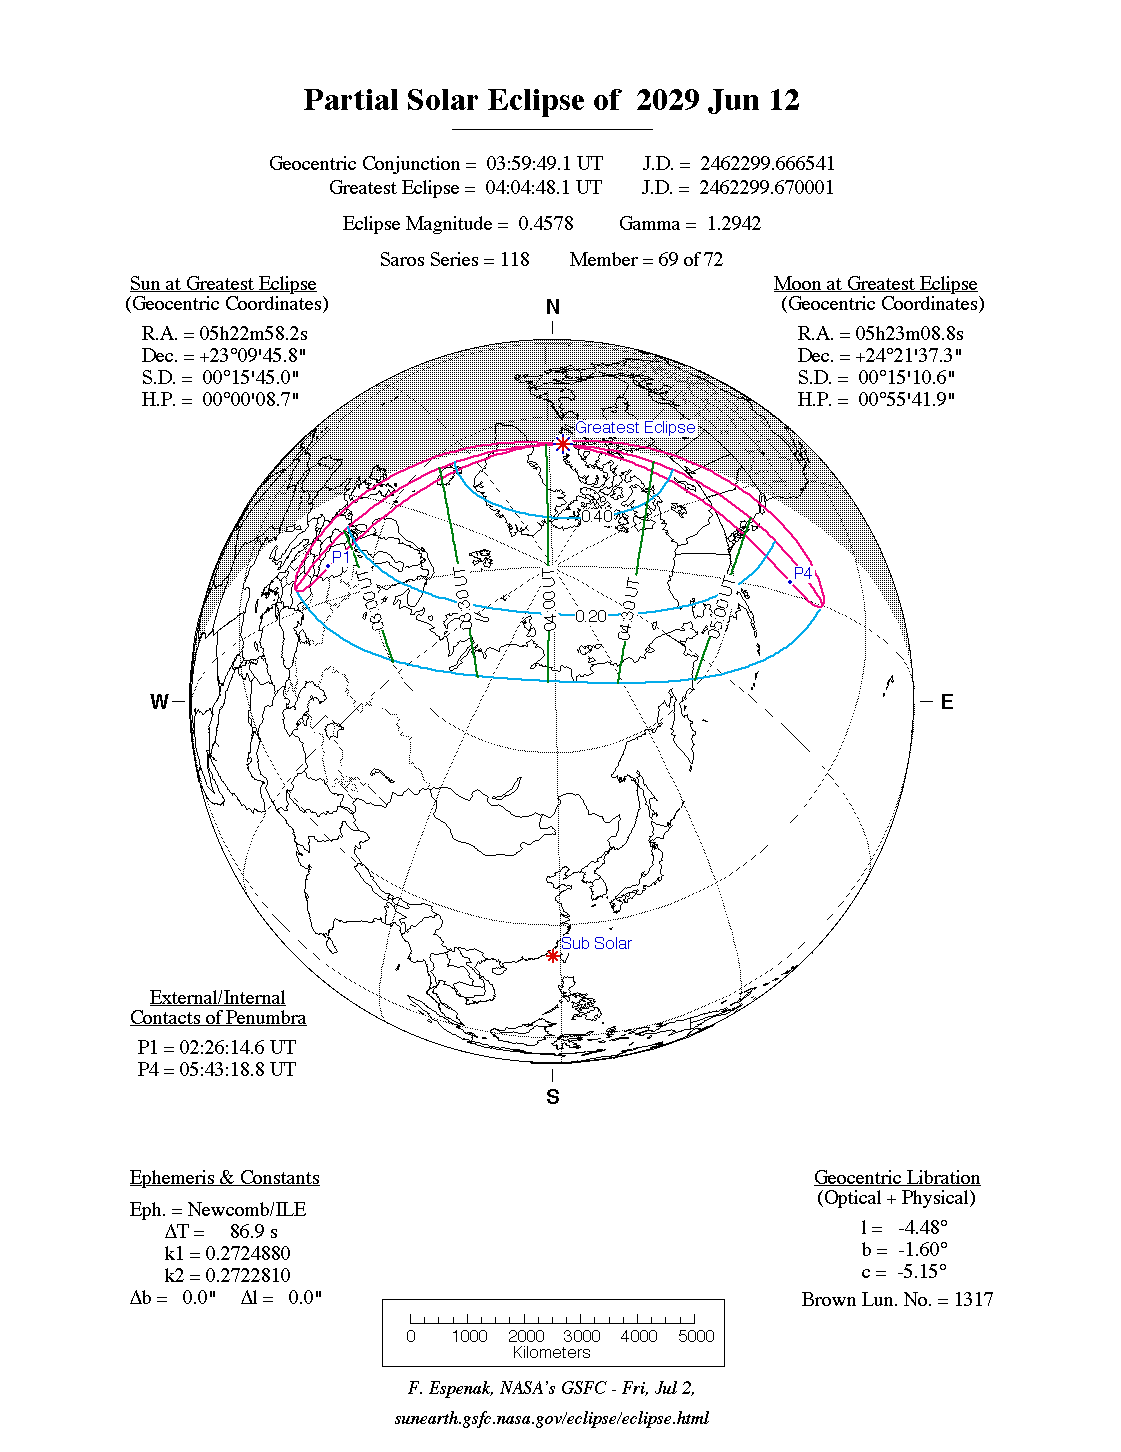 Verlauf der Partiellen Sonnenfinsternis am 12.06.2029